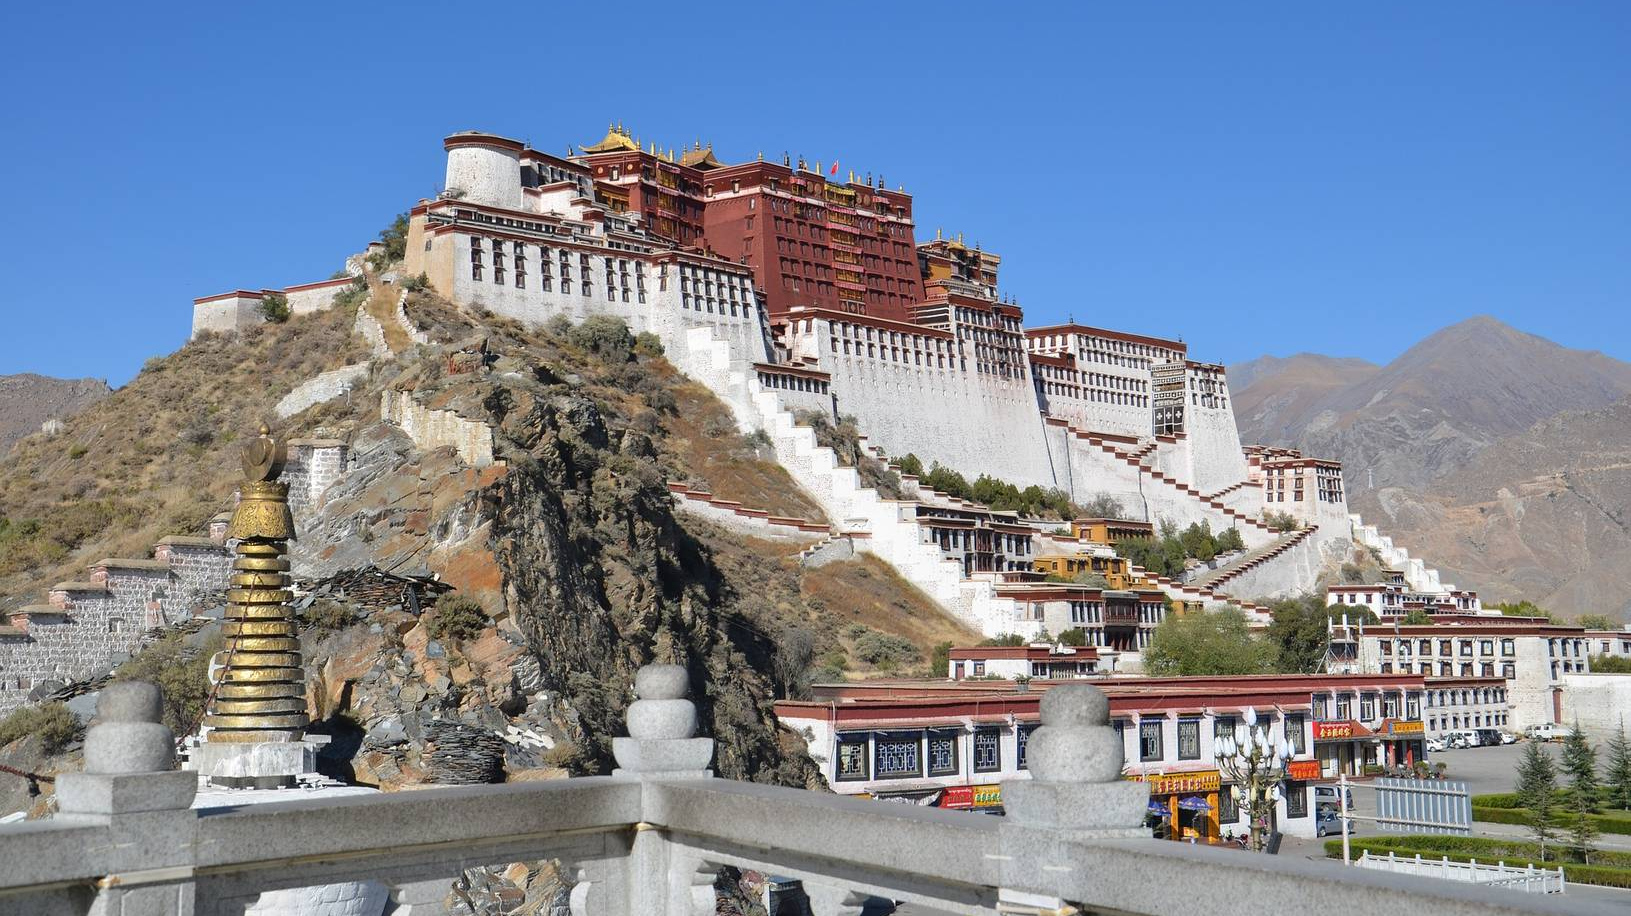 Лхаса. Тибет